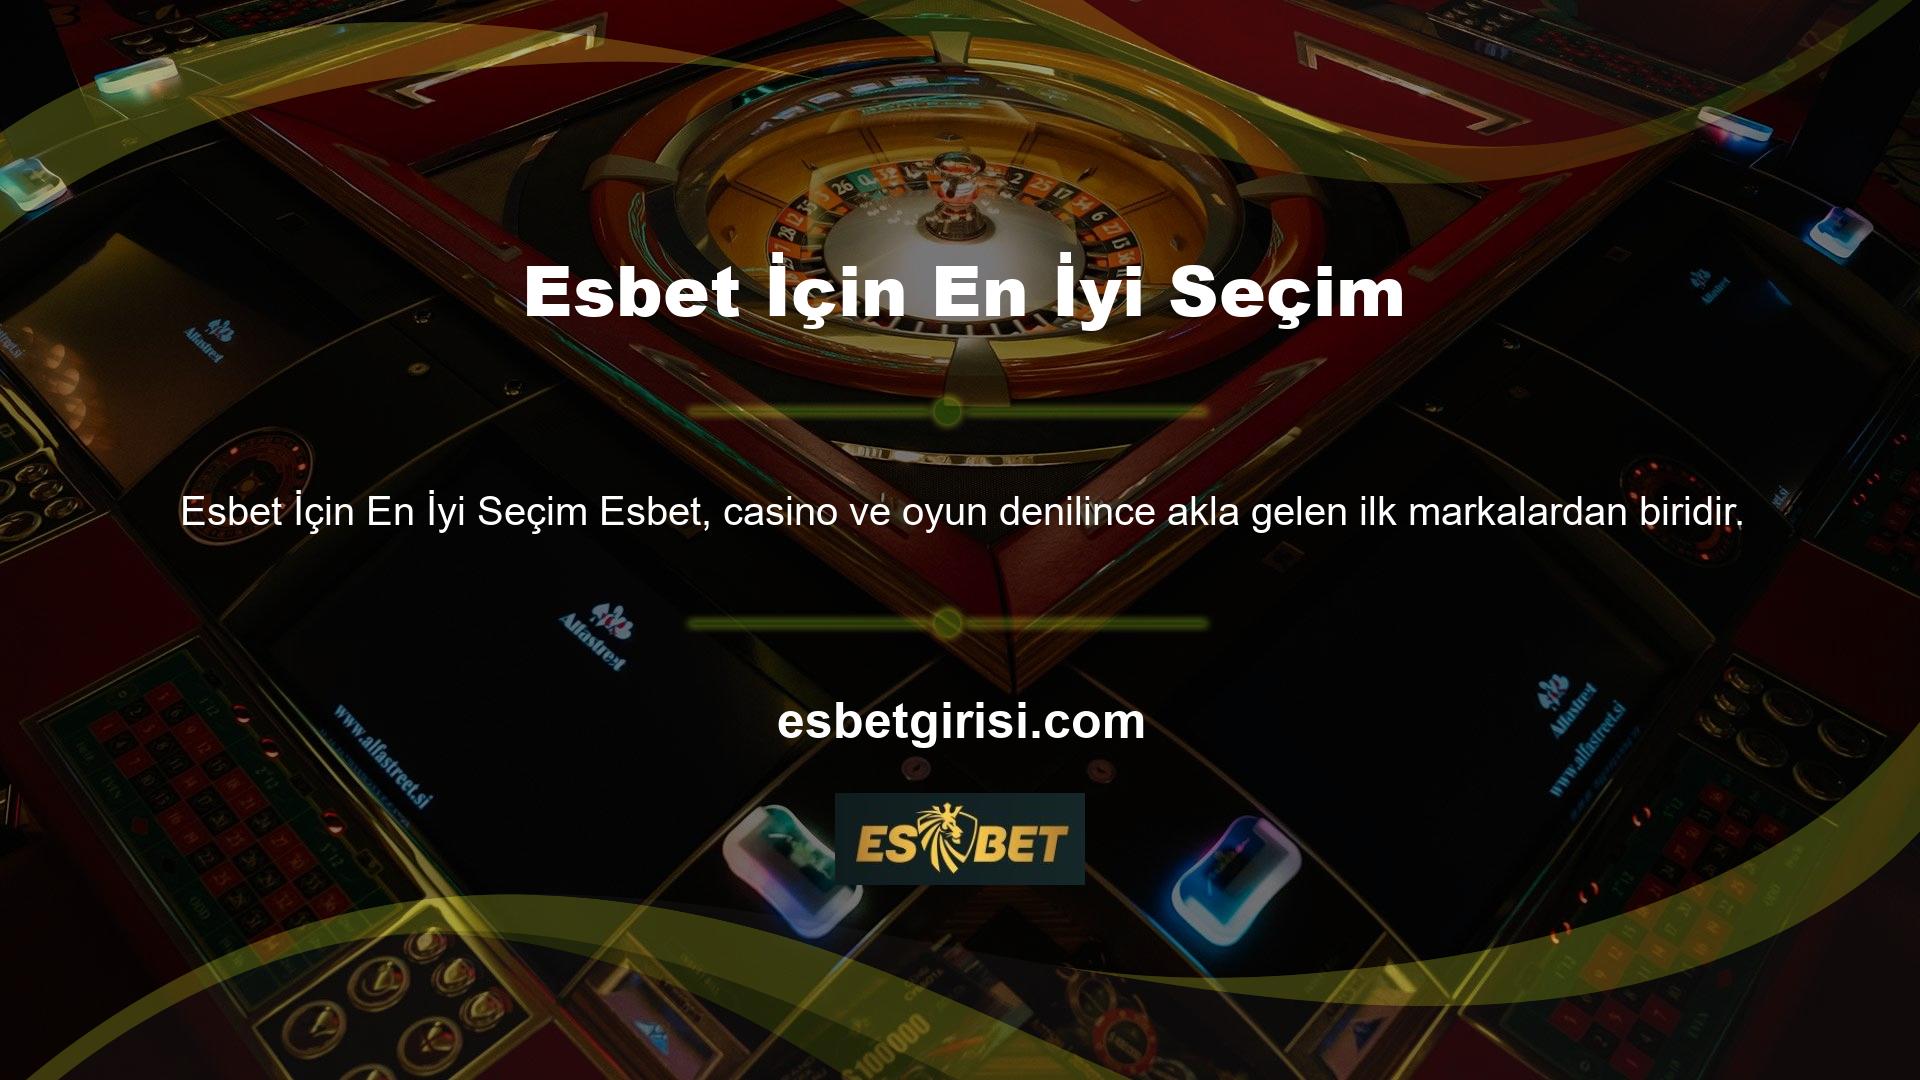 En hızlı ve en kaliteli slot casino platformlarına sahip sitelerde bahis yapmak resmi olarak bir istisnadır